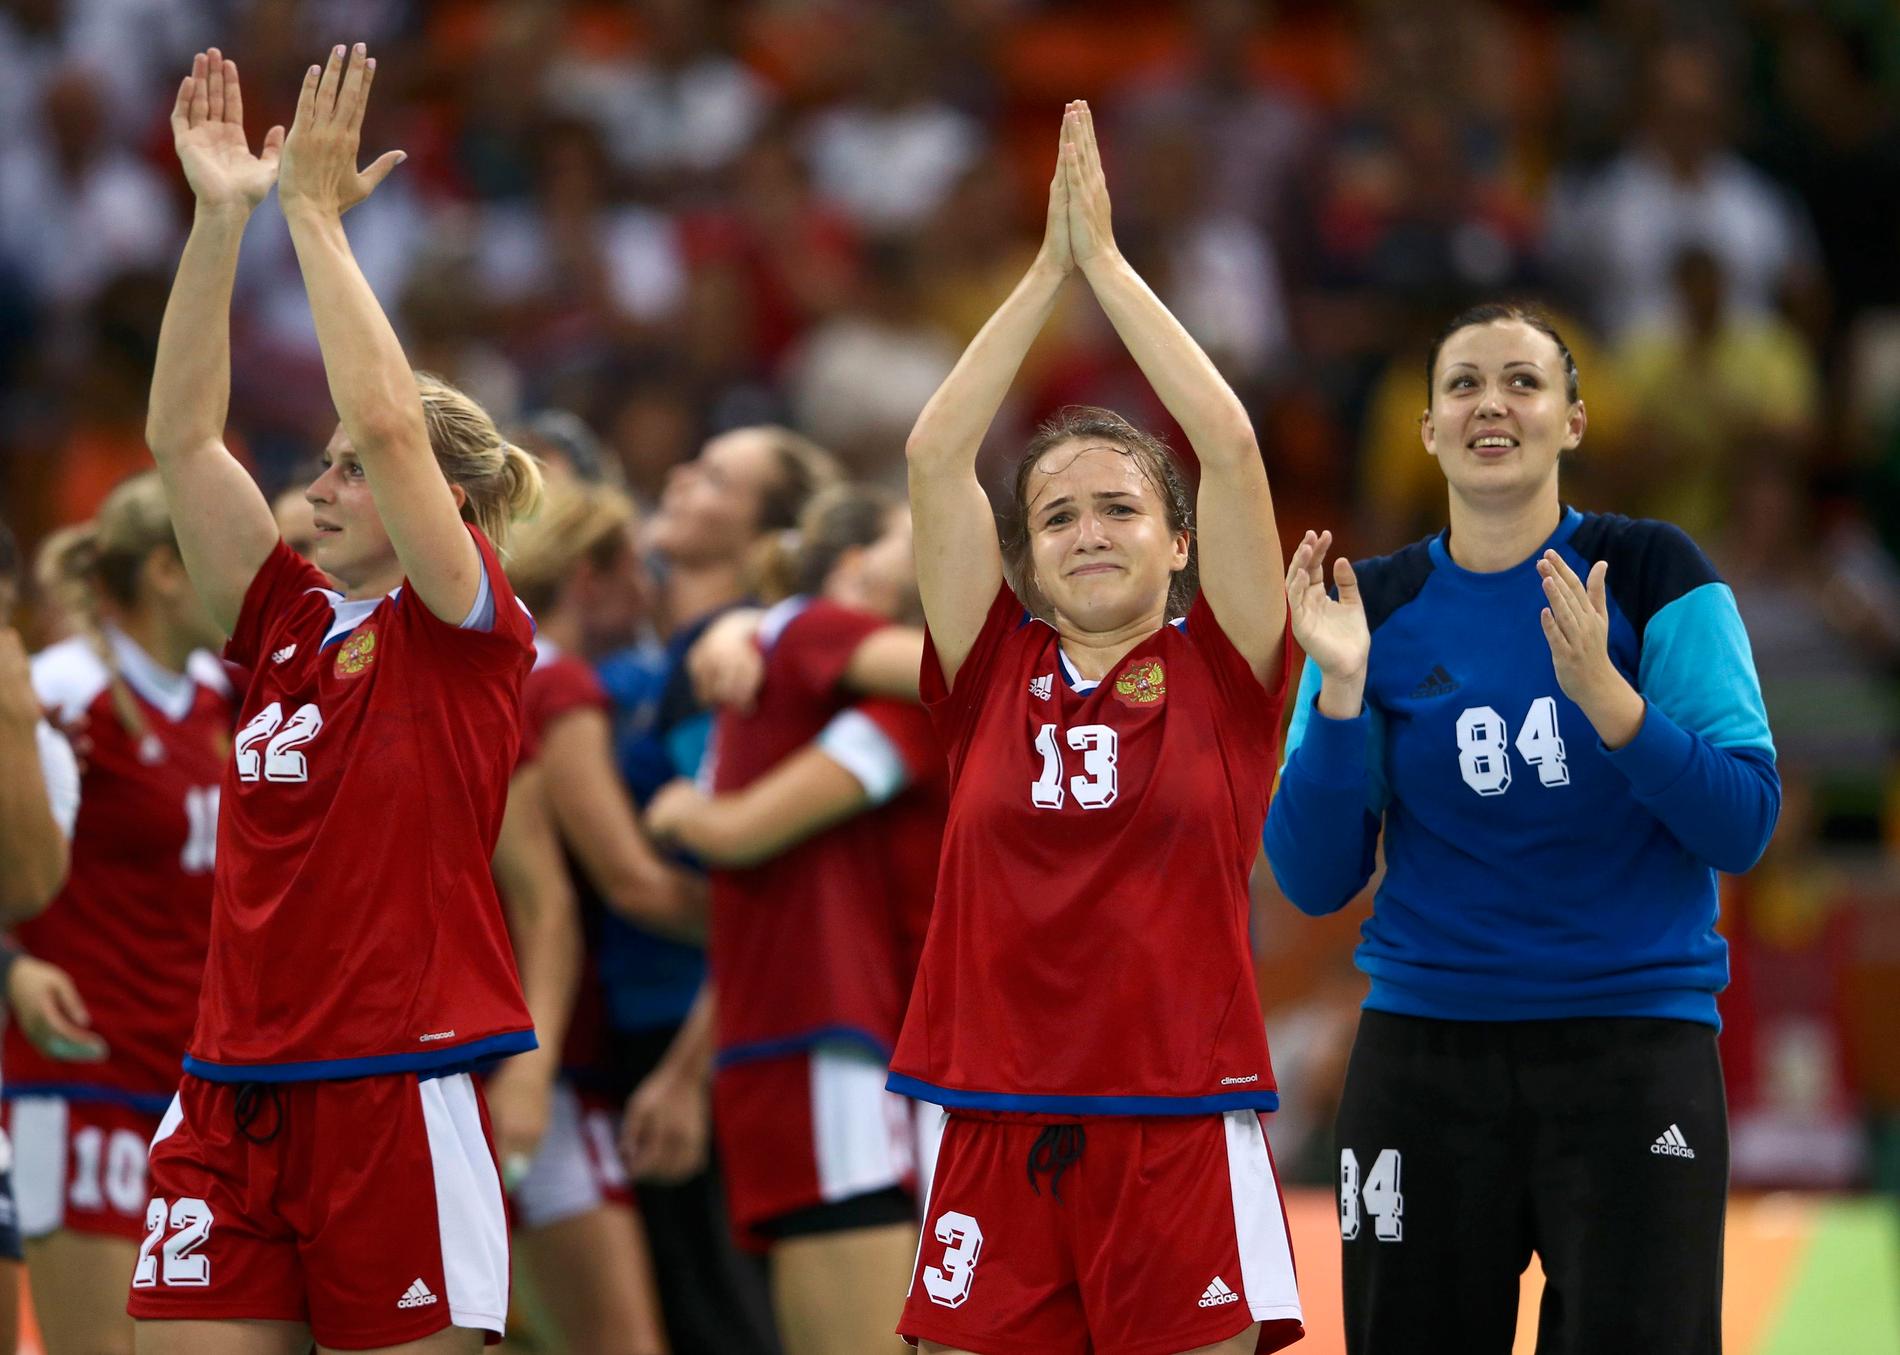 TÅREFYLT: Anna Vjakhireva var emosjonell etter seieren over Norge i OL-semifinalen i Rio.